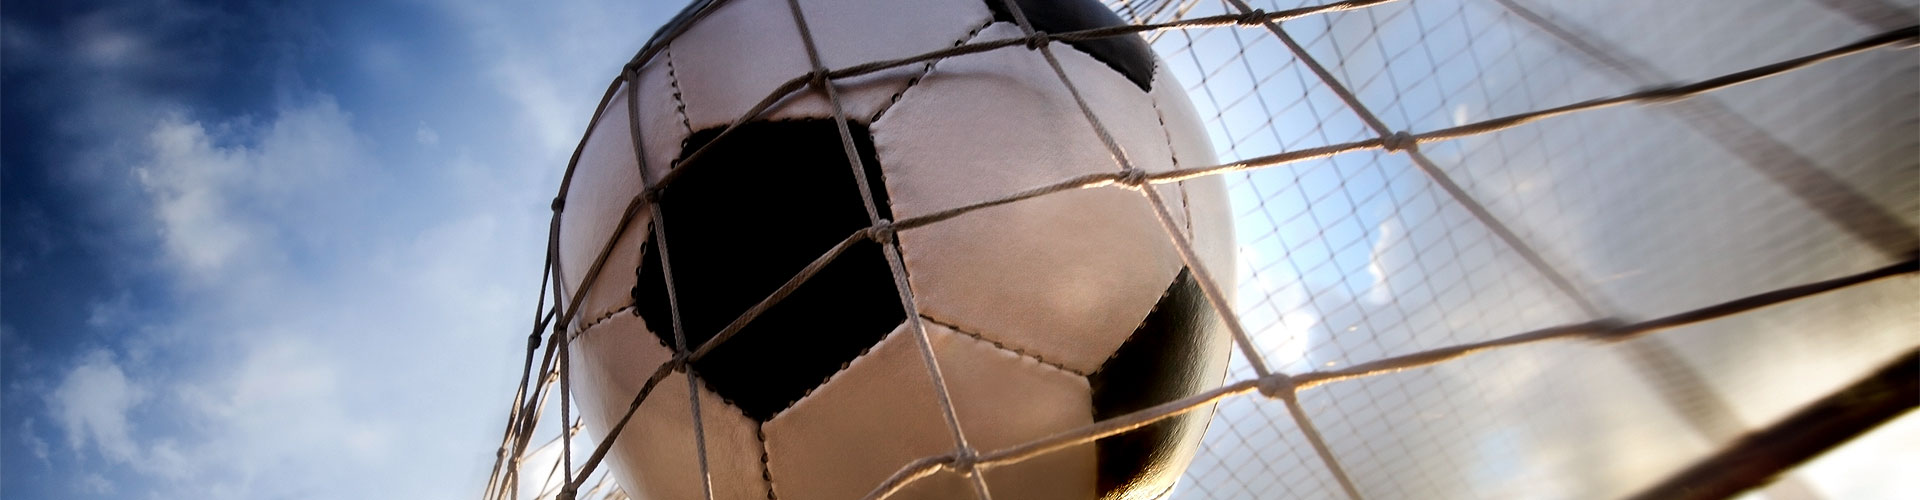 Ver la Eurocopa 2020 de fútbol en vivo en Cotobade